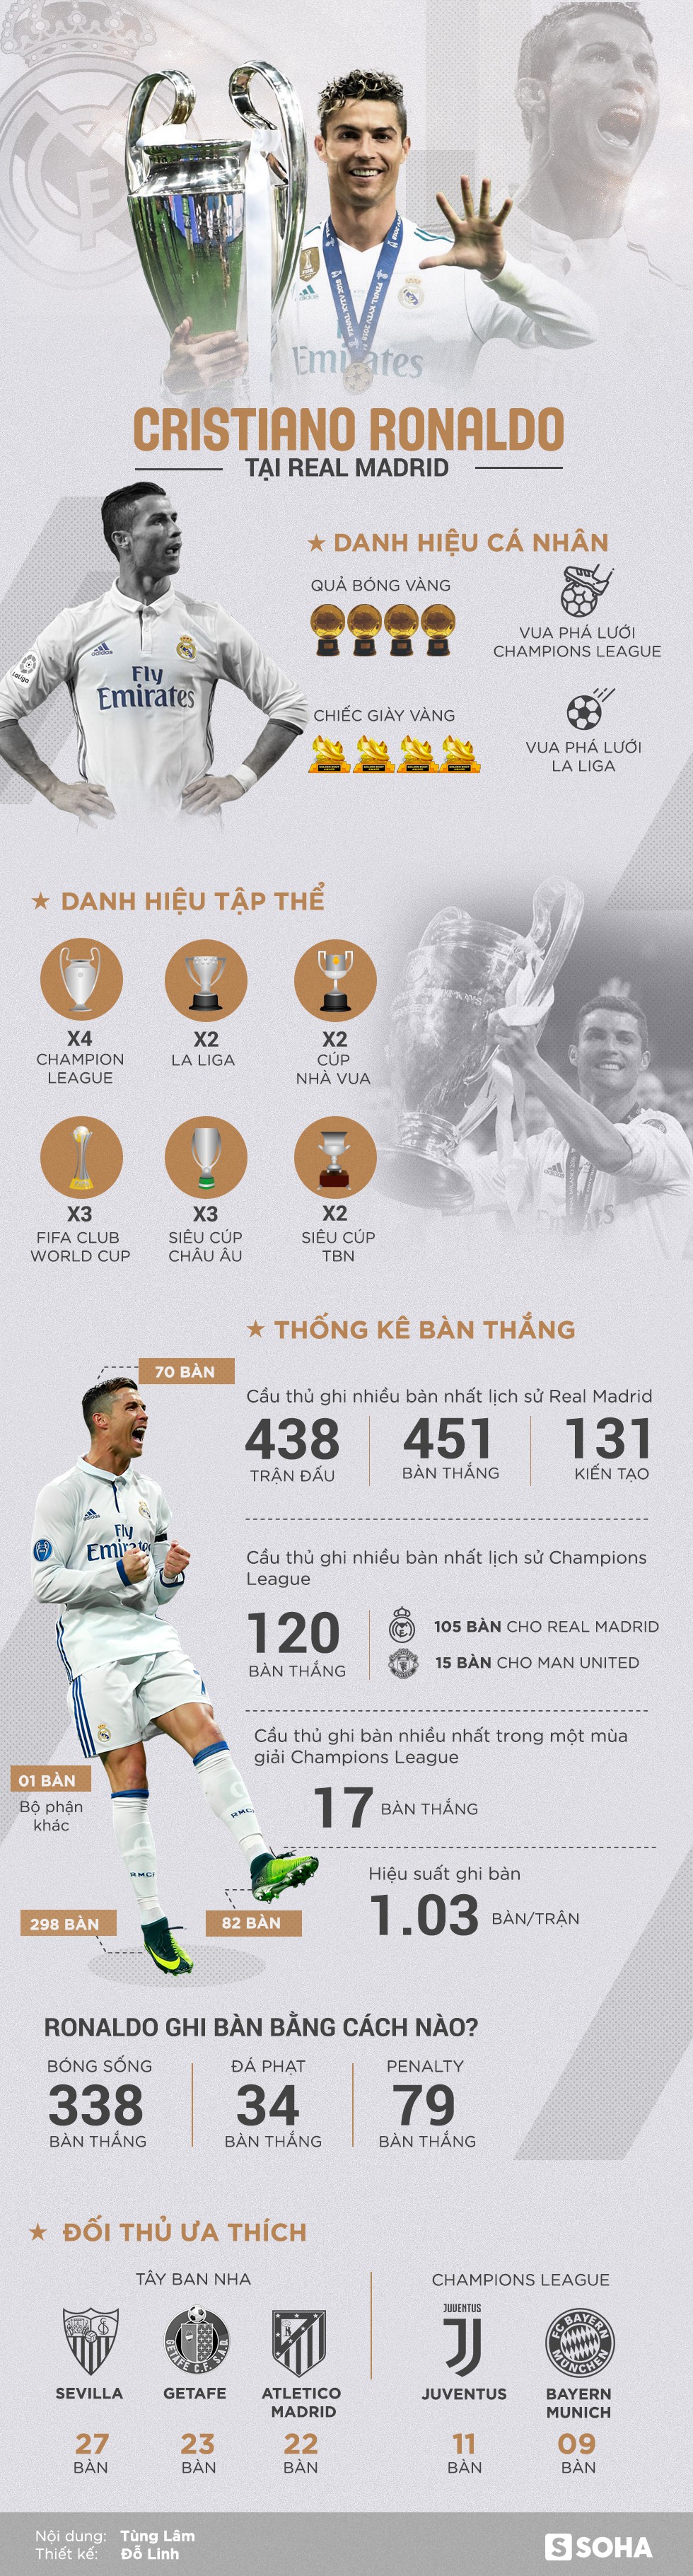 Bảng thành tích triệu người mơ ước của Ronaldo trong màu áo Real Madrid - Ảnh 1.